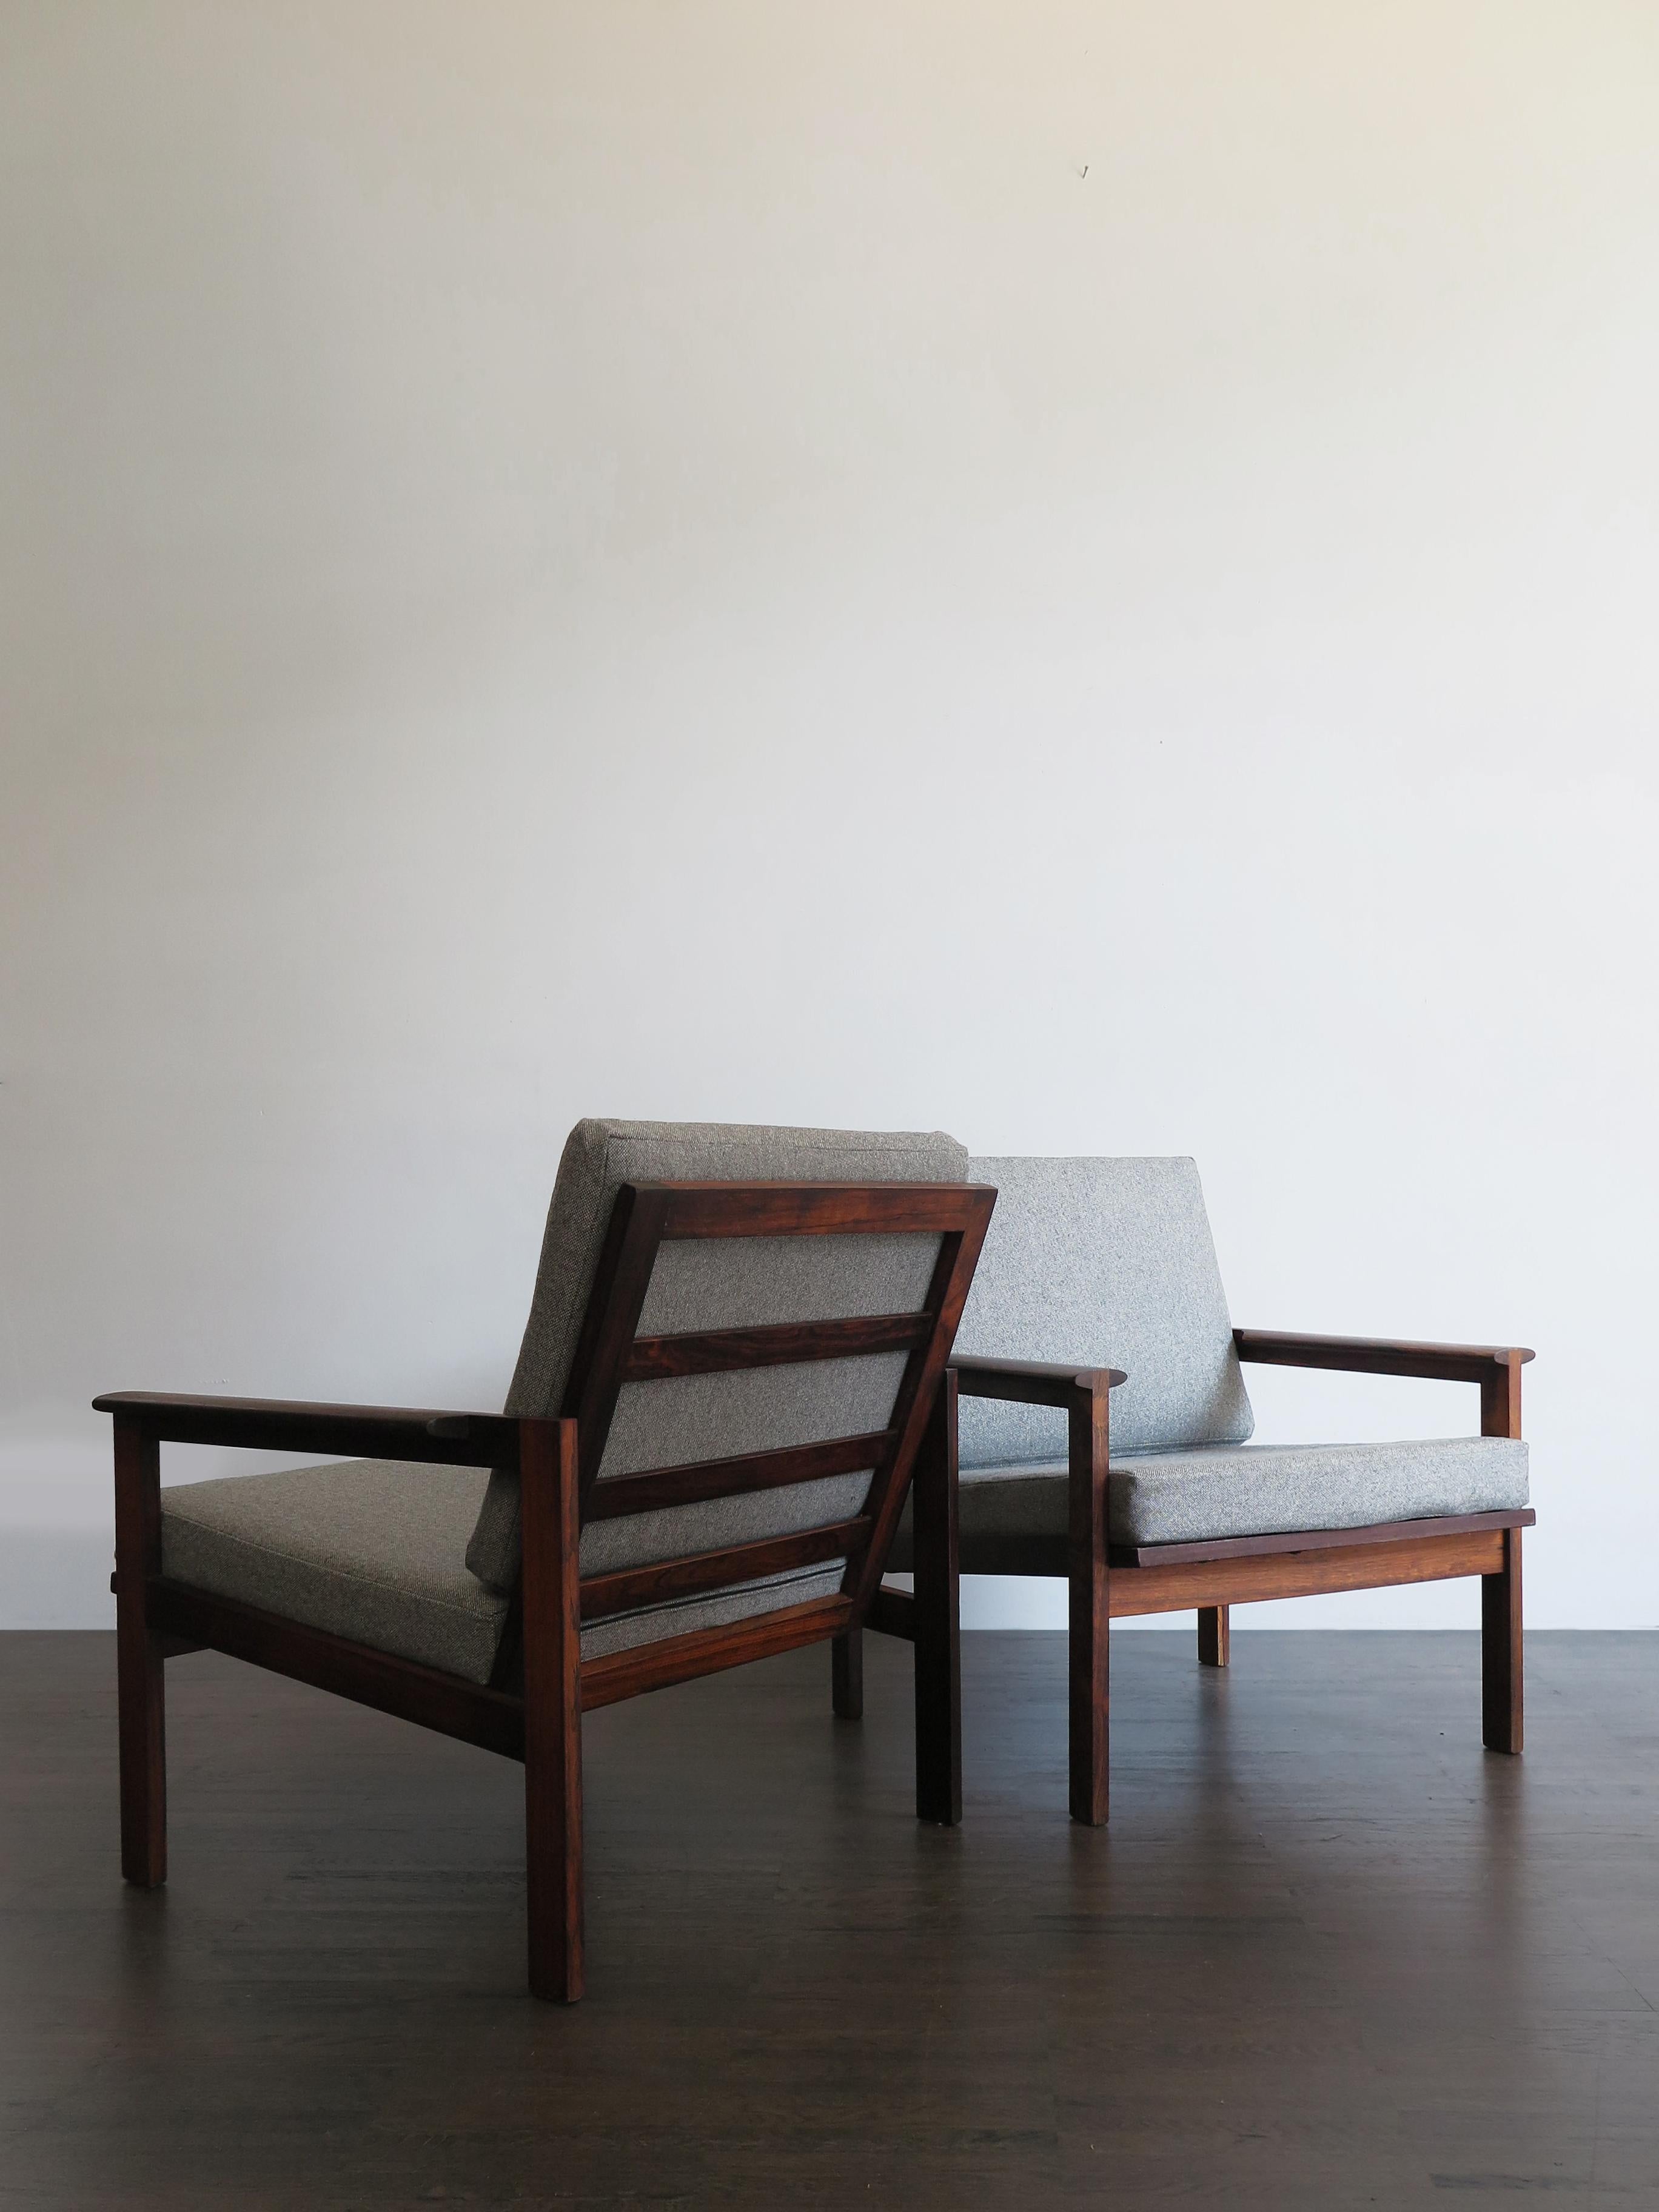 Couple de fauteuils originaux de design scandinave midcentury modern modèle Capella conçu par Illum Wikkelsø et produit par Niels Eilersen avec structure en bois massif foncé et nouveaux coussins rembourrés gris, Danemark années 1960.

Veuillez